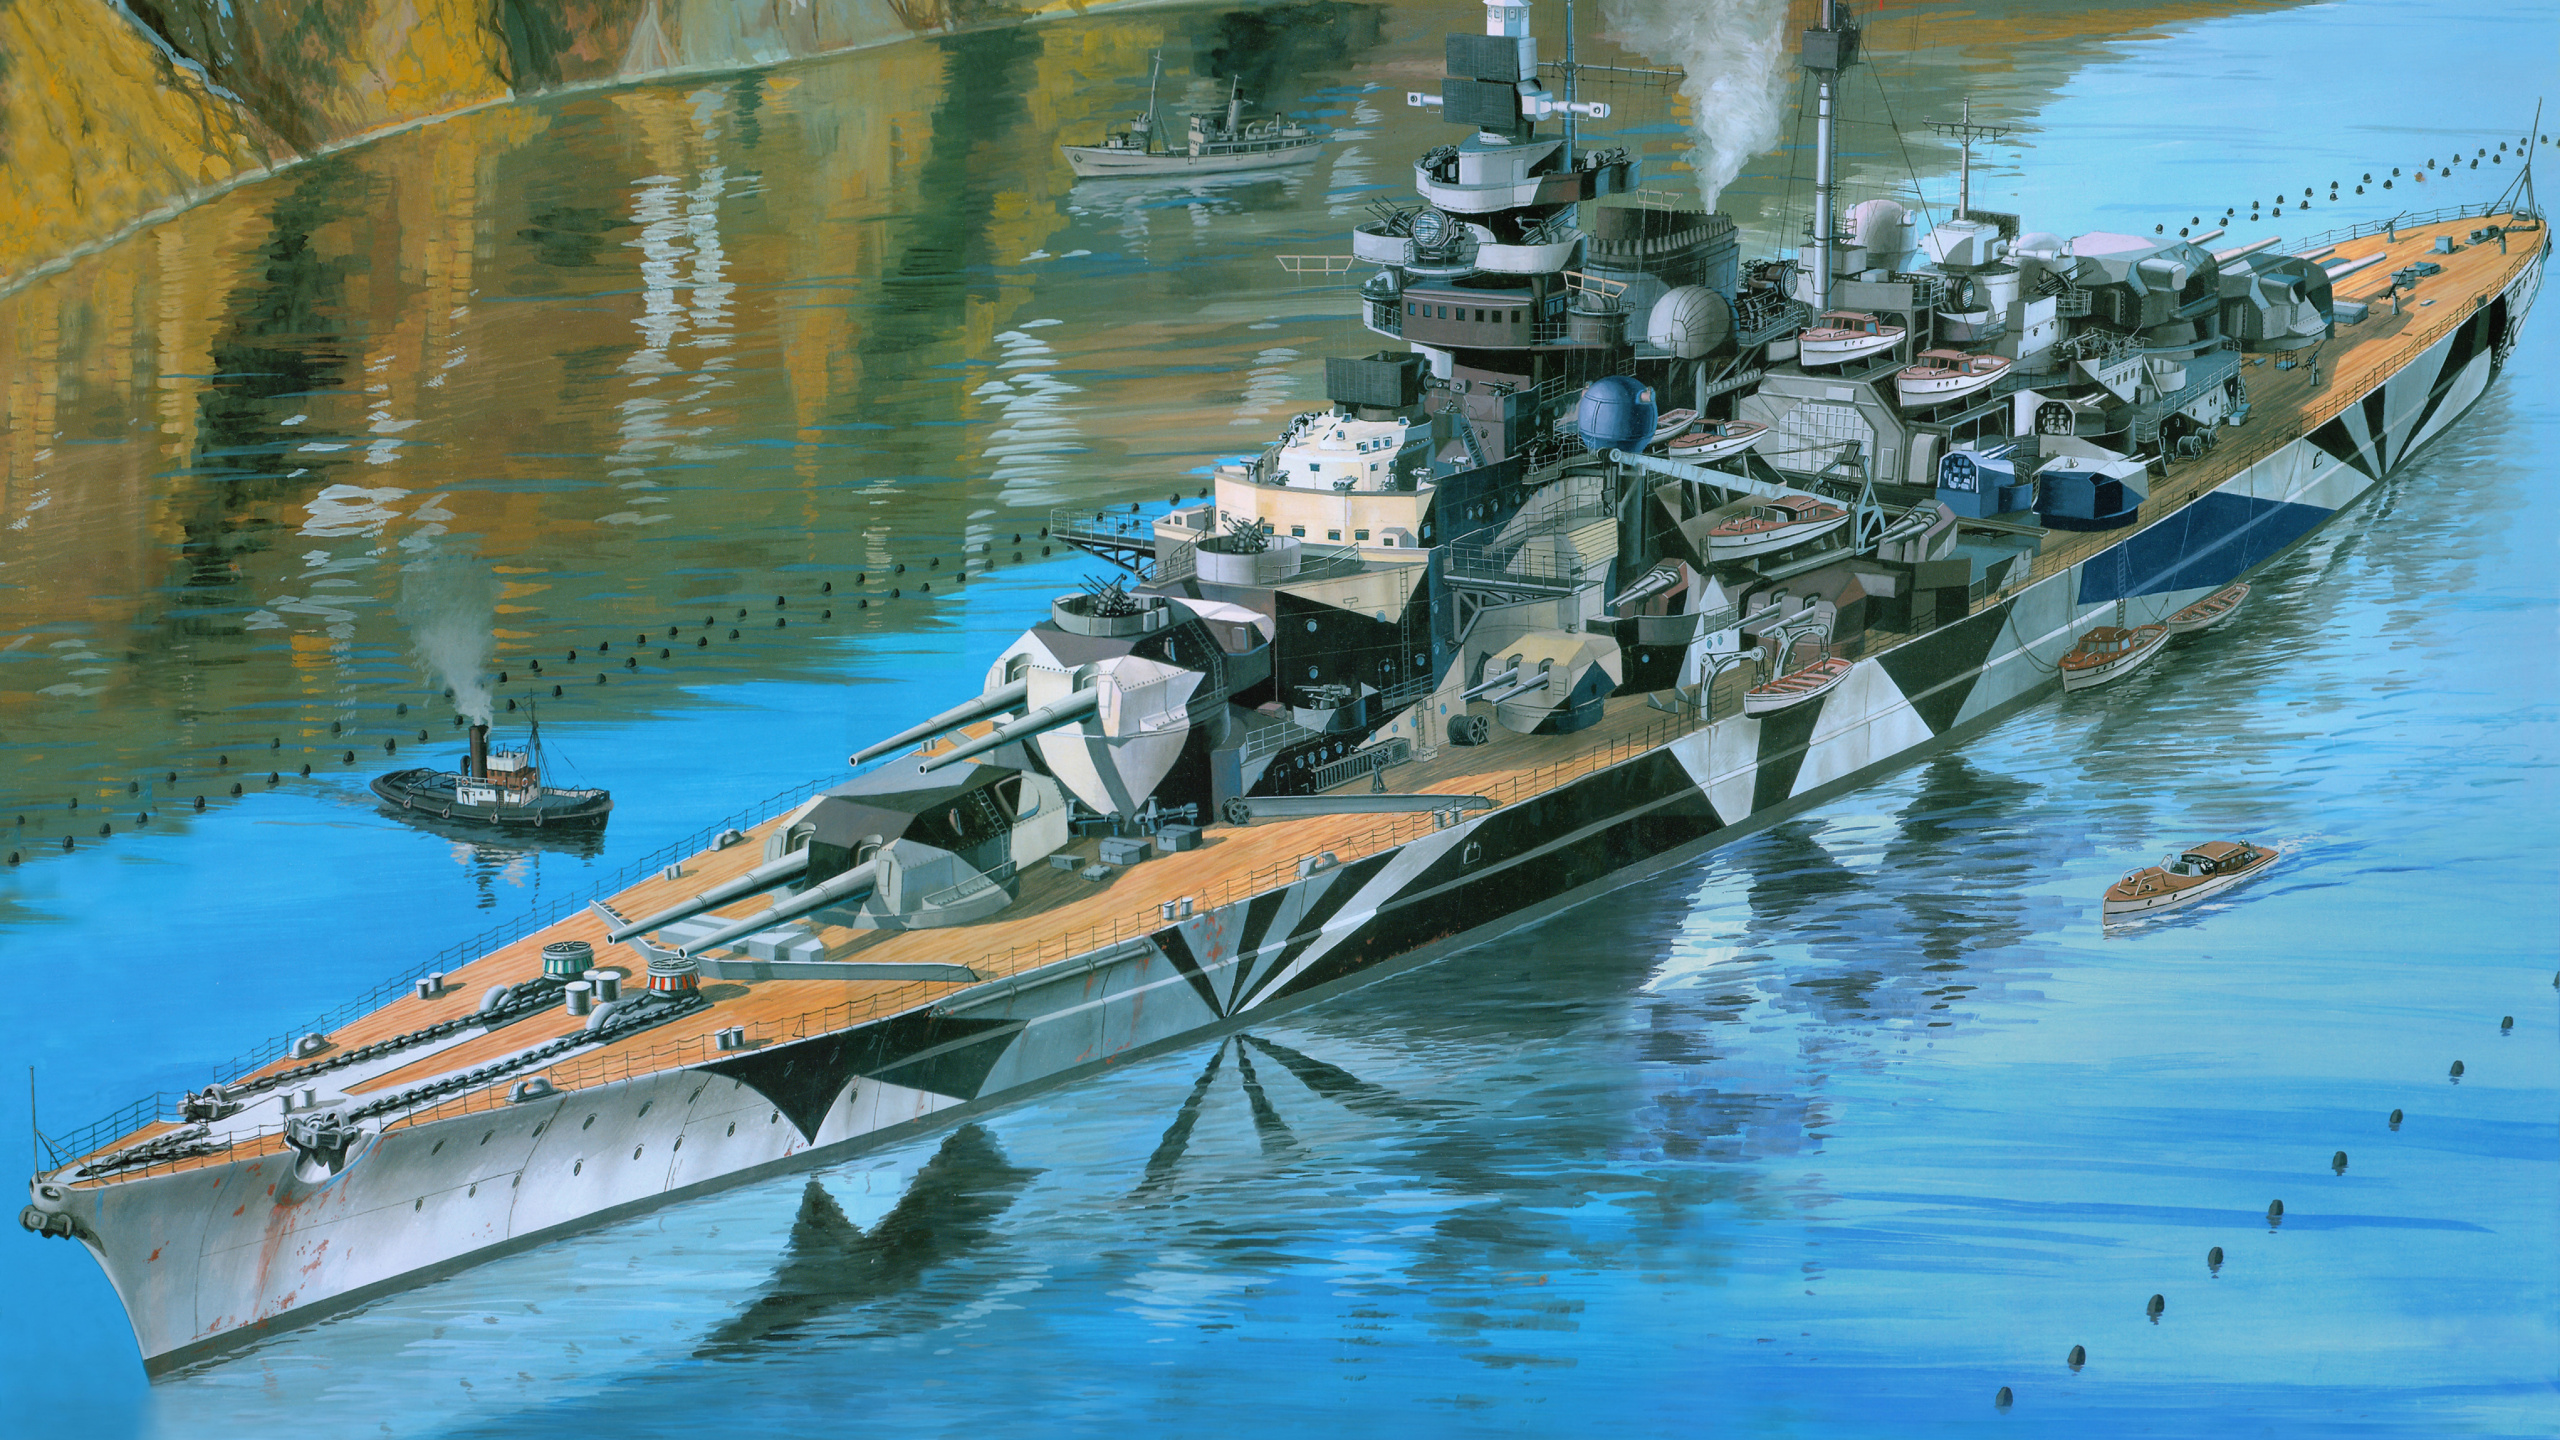 Acorazado Alemán Tirpitz, Revell, el Modelo de Plástico, Acorazado Alemán Bismarck, Barco. Wallpaper in 2560x1440 Resolution